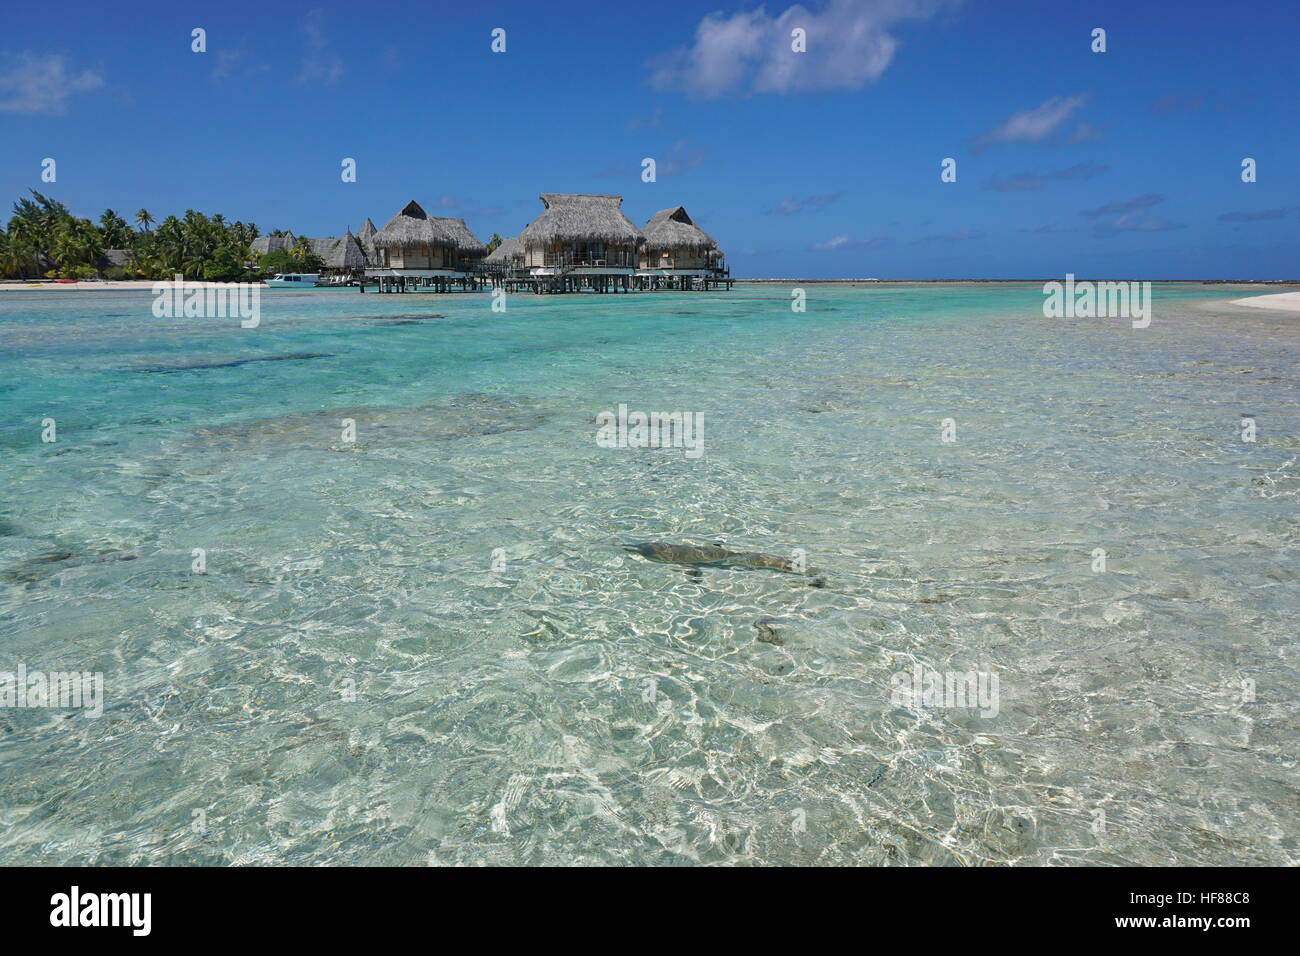 L'eau peu profonde d'un lagon tropical avec bungalows sur pilotis, l'atoll de Tikehau, archipel des Tuamotu, en Polynésie française, l'océan Pacifique Banque D'Images